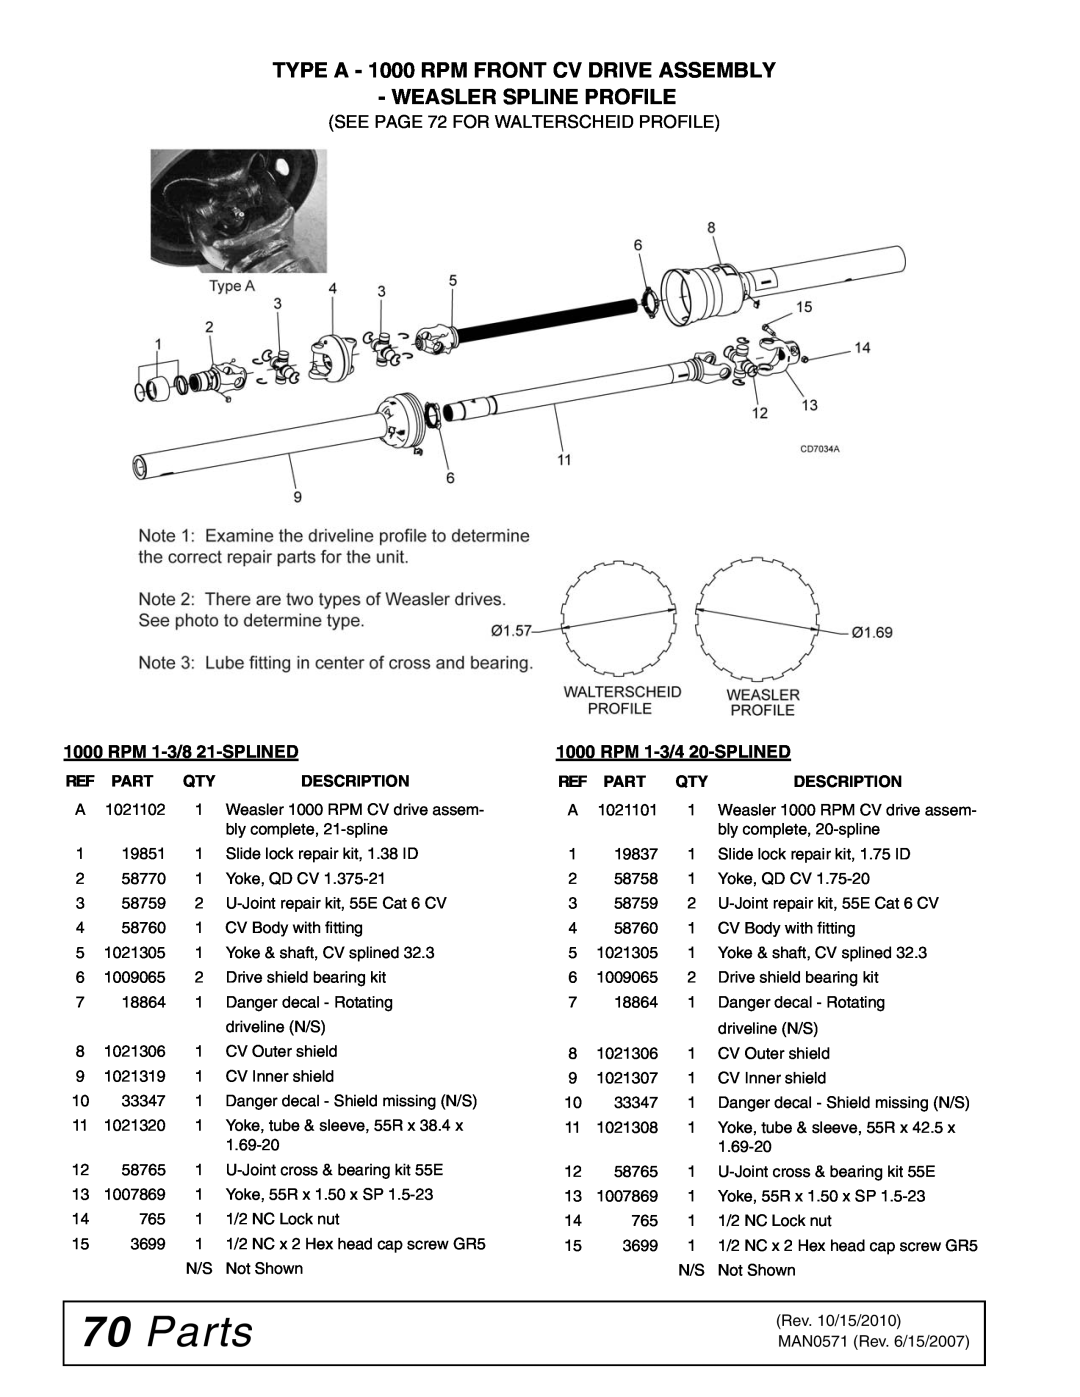 Woods Equipment DS1440, DSO1260Q manual Parts, TYPE A - 1000 RPM FRONT CV DRIVE ASSEMBLY WEASLER SPLINE PROFILE, Description 